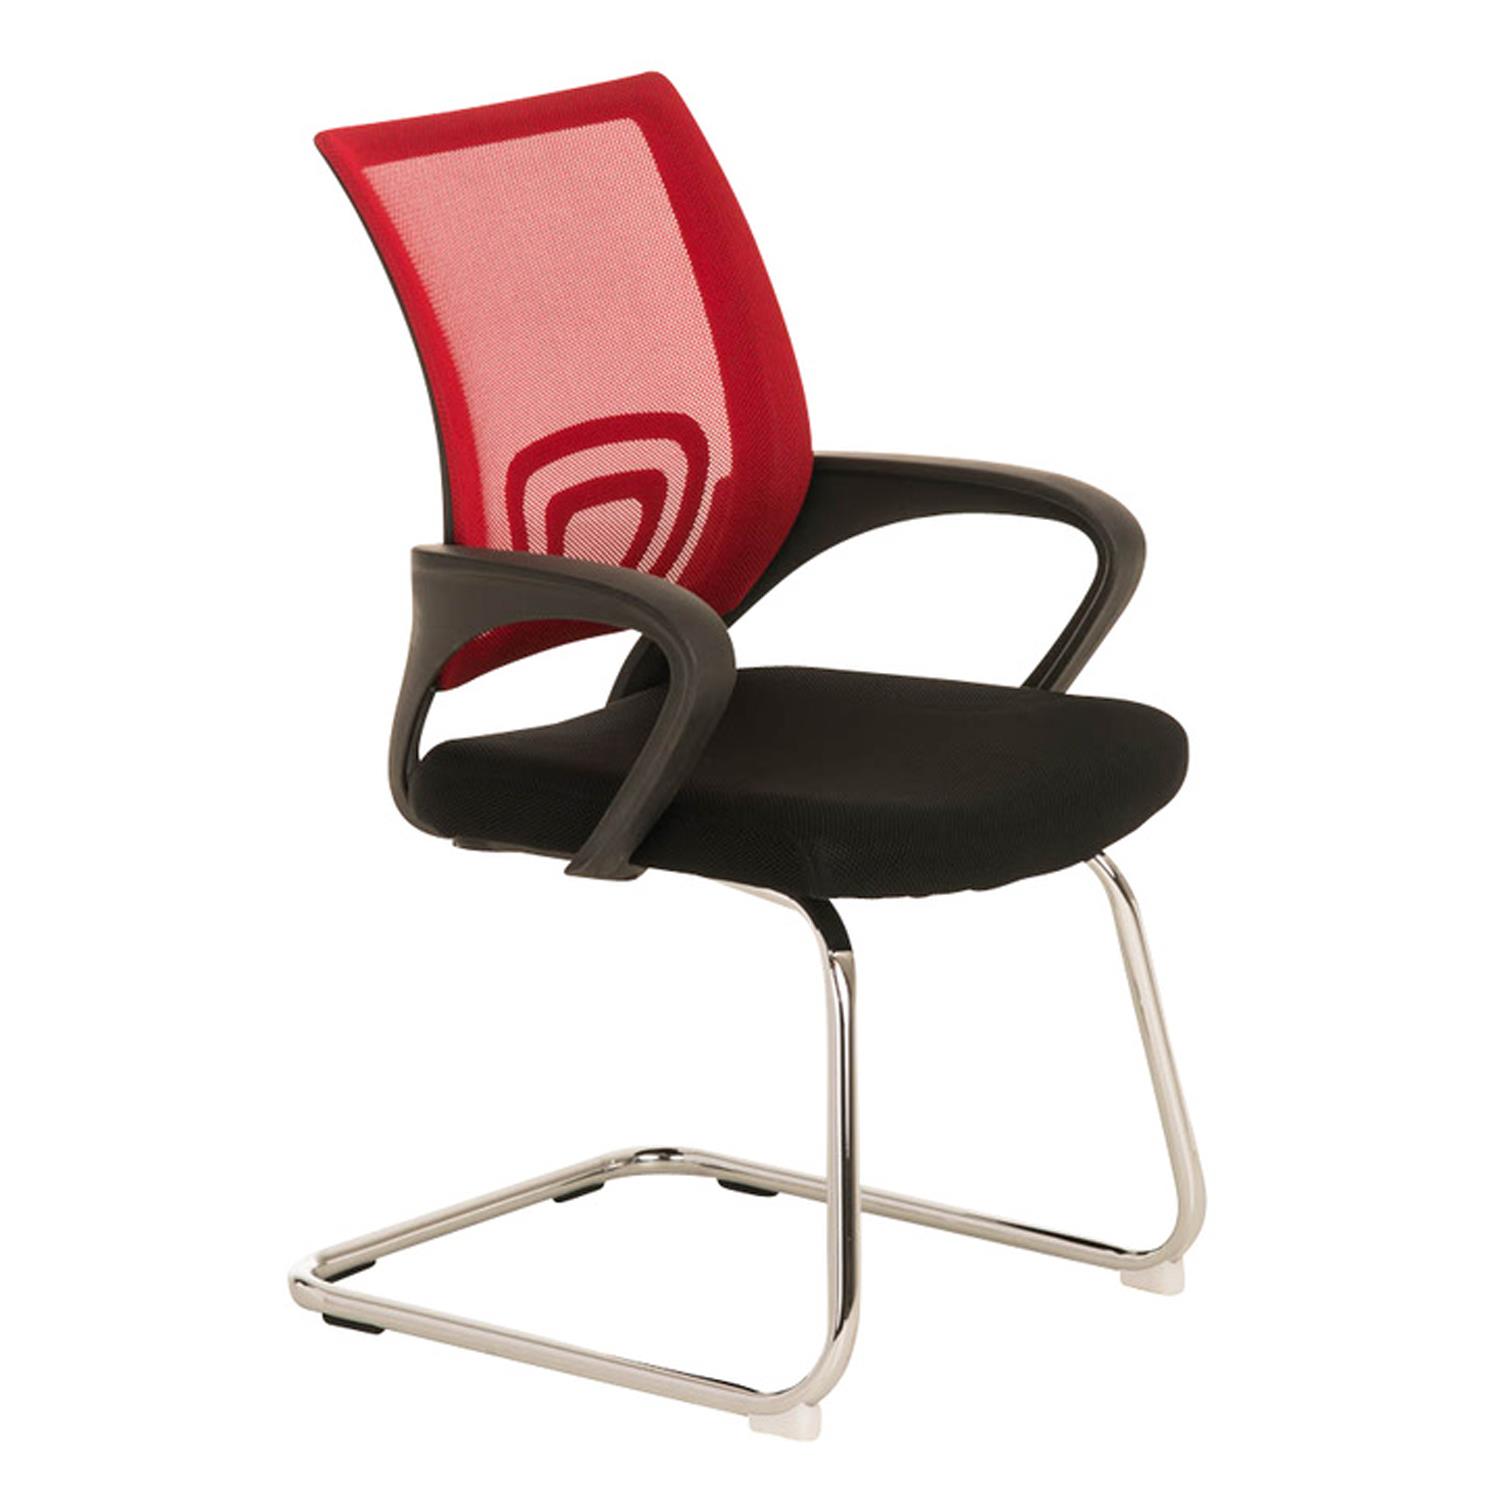 Cadeira de Visita SEUL V, Design Atractivo, Assento Acolchoado, Cor Vermelho